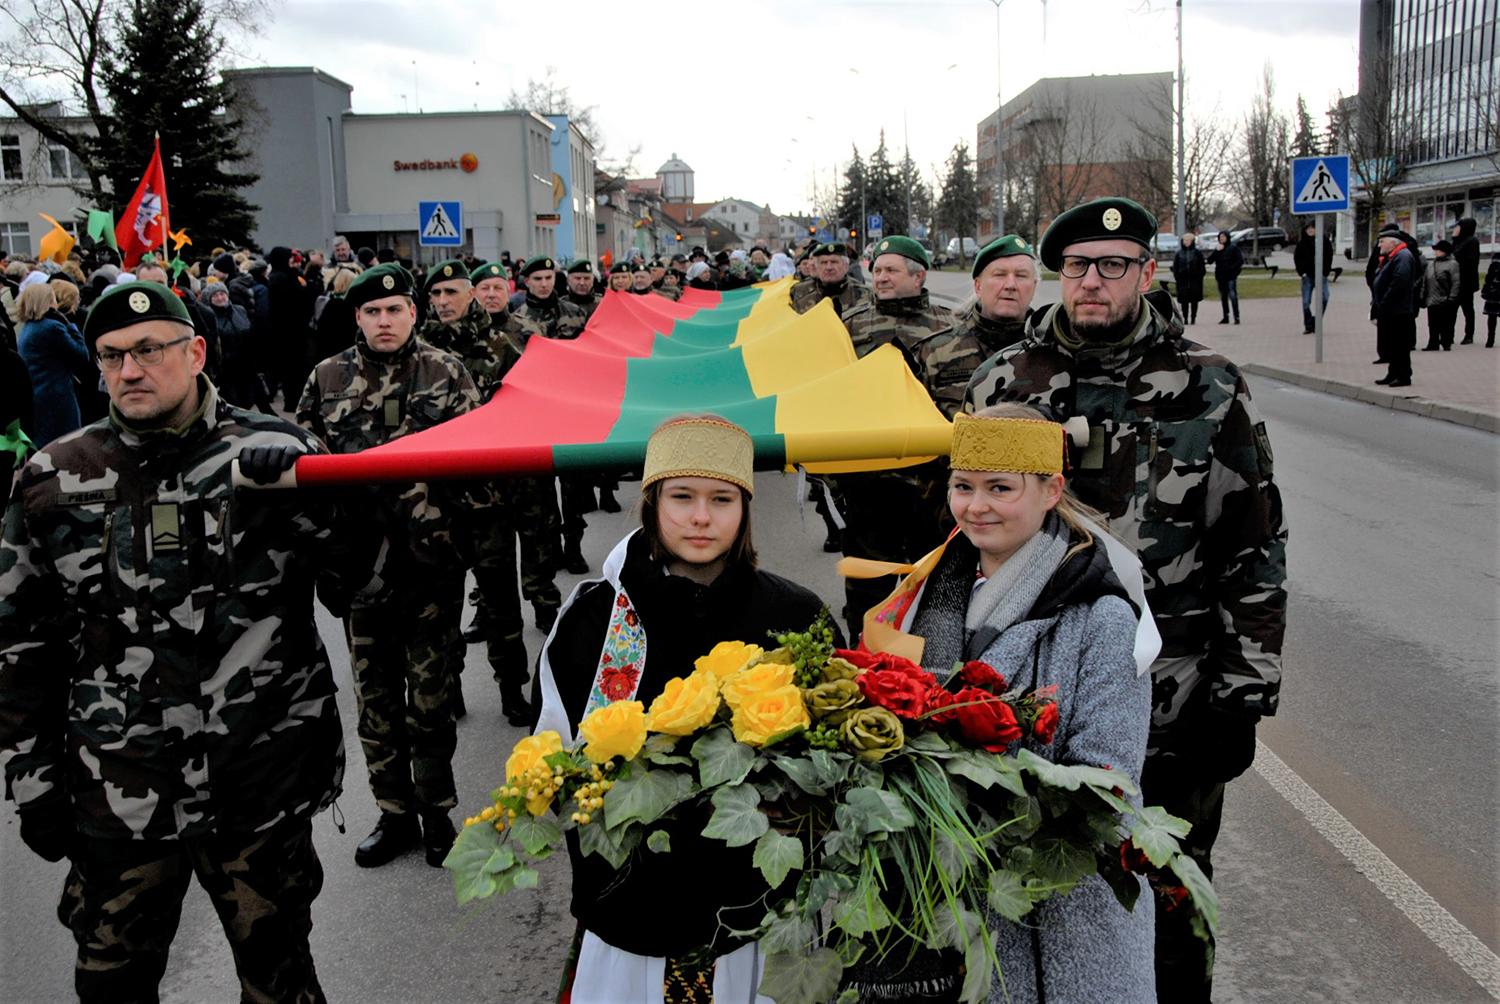 Paminėjome nepriklausomos Lietuvos 30-ąjį jubiliejų / Gedimino Nemunaičio nuotr. Iki Laisvės paminklo nešta didžiulė vėliava.